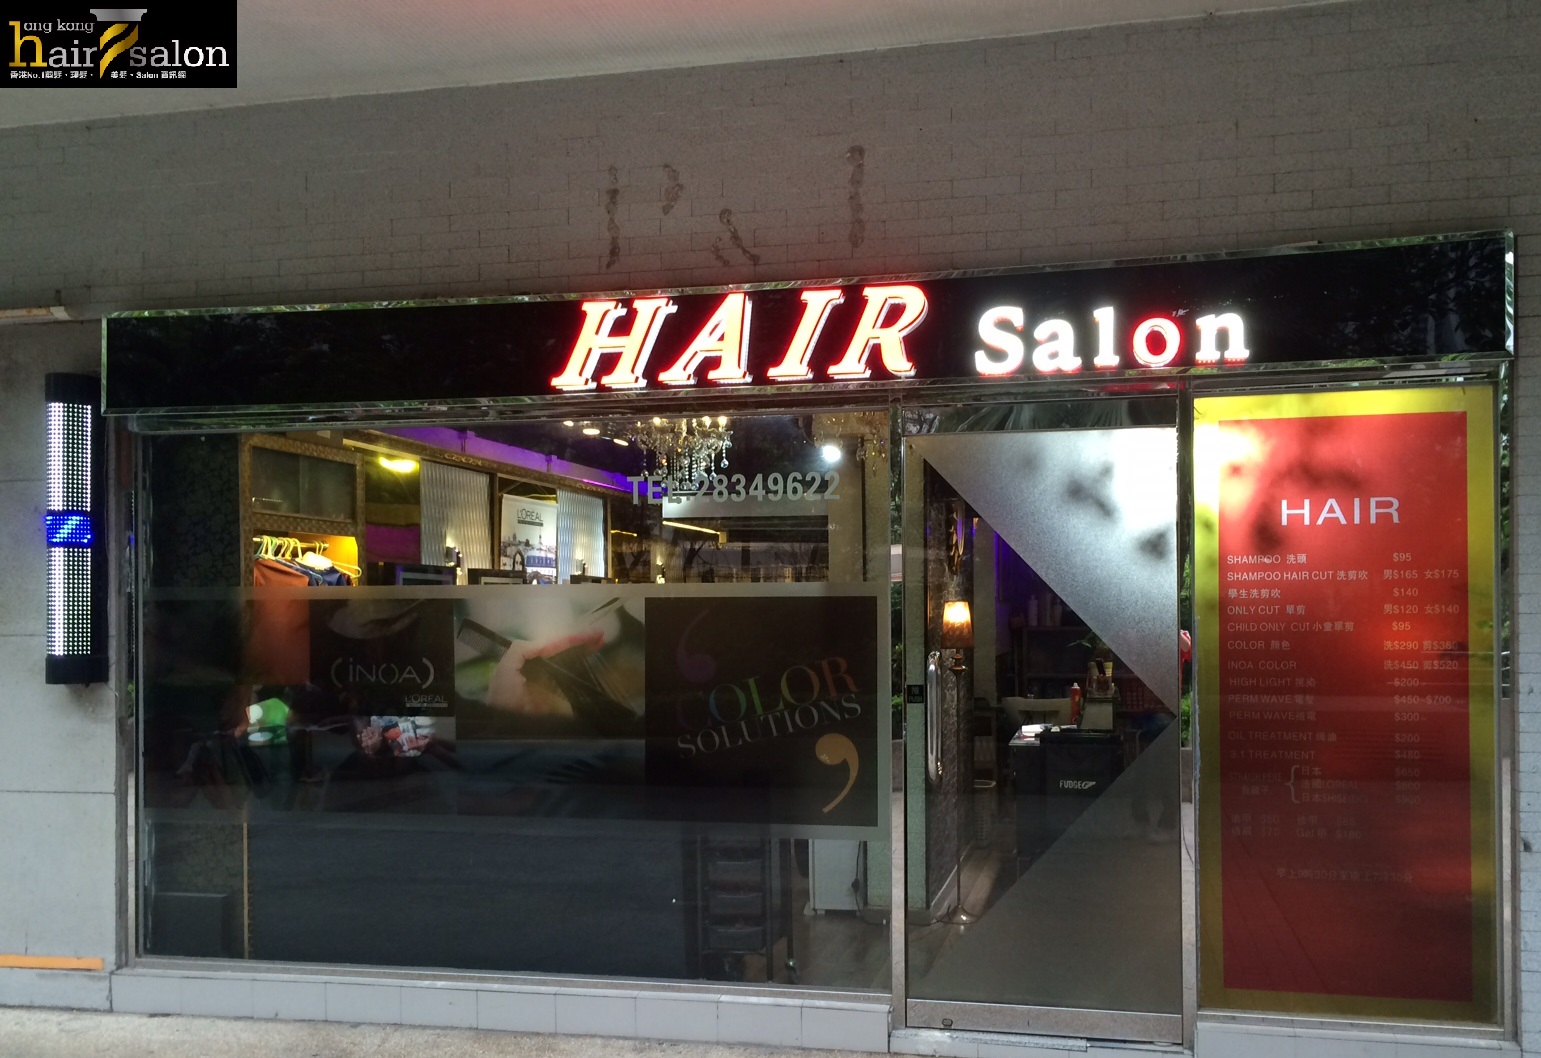 Hair Colouring: Hair Salon